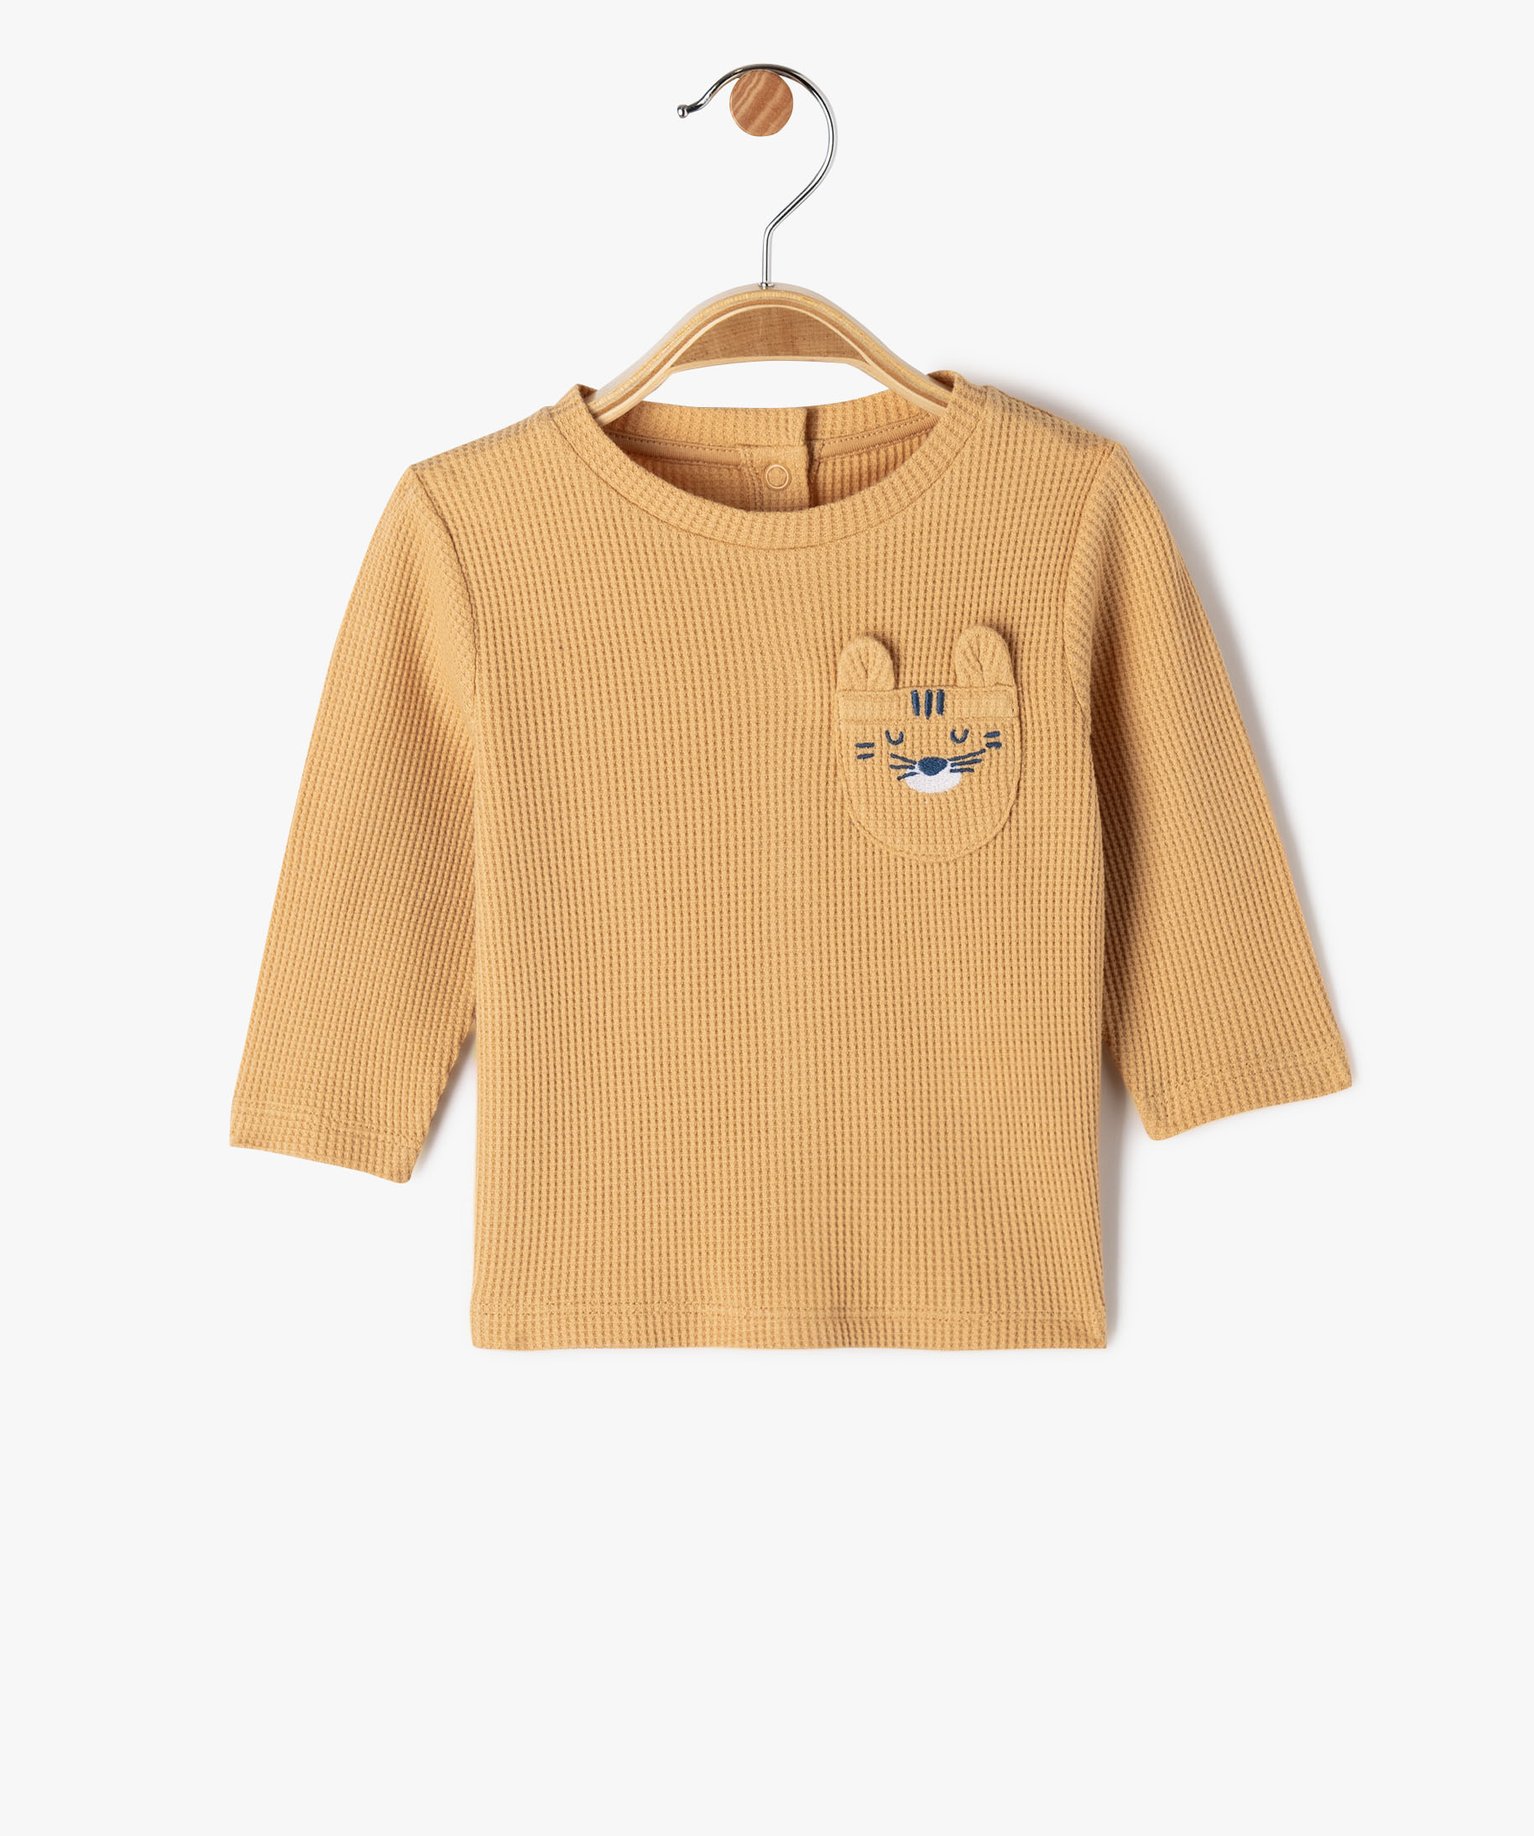 Tee-shirt à manches longues en maille nid d’abeille bébé garçon - 6M - marron - GEMO